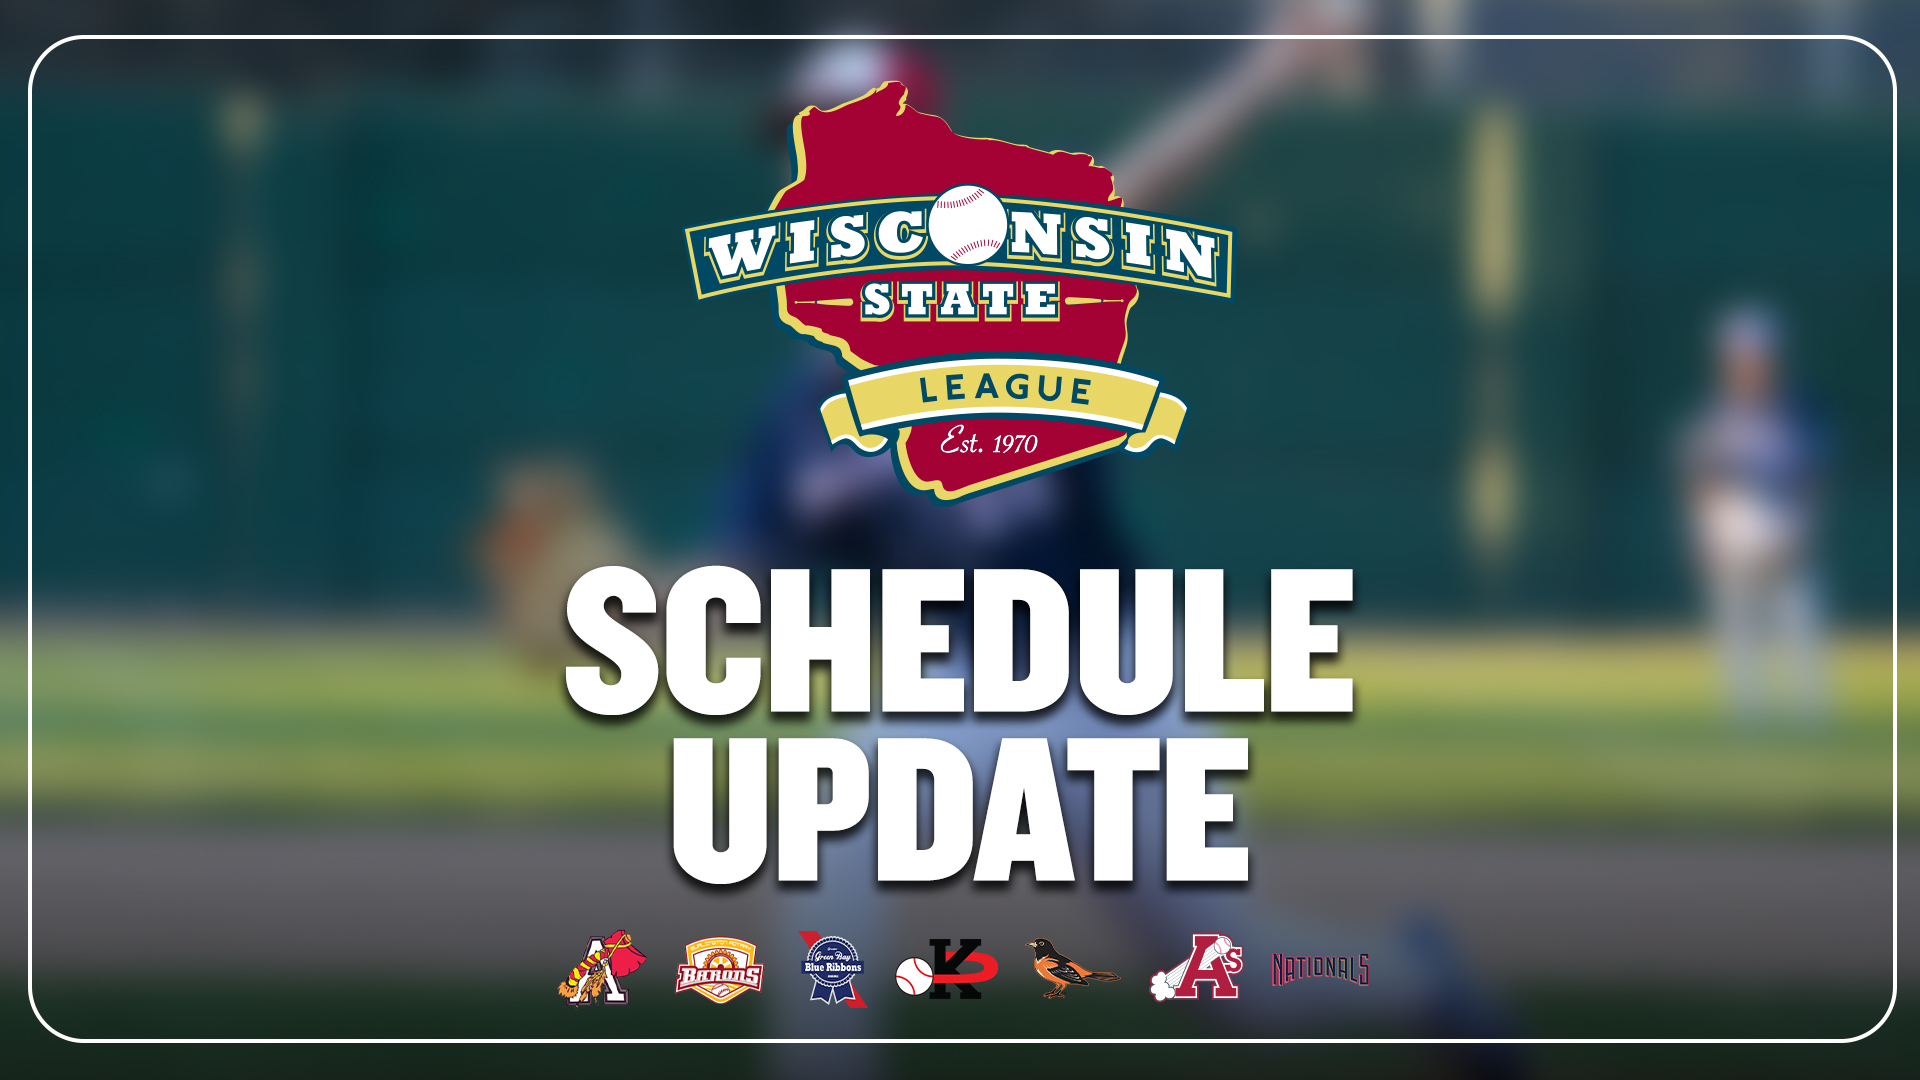 Wisconsin State League Schedule Update